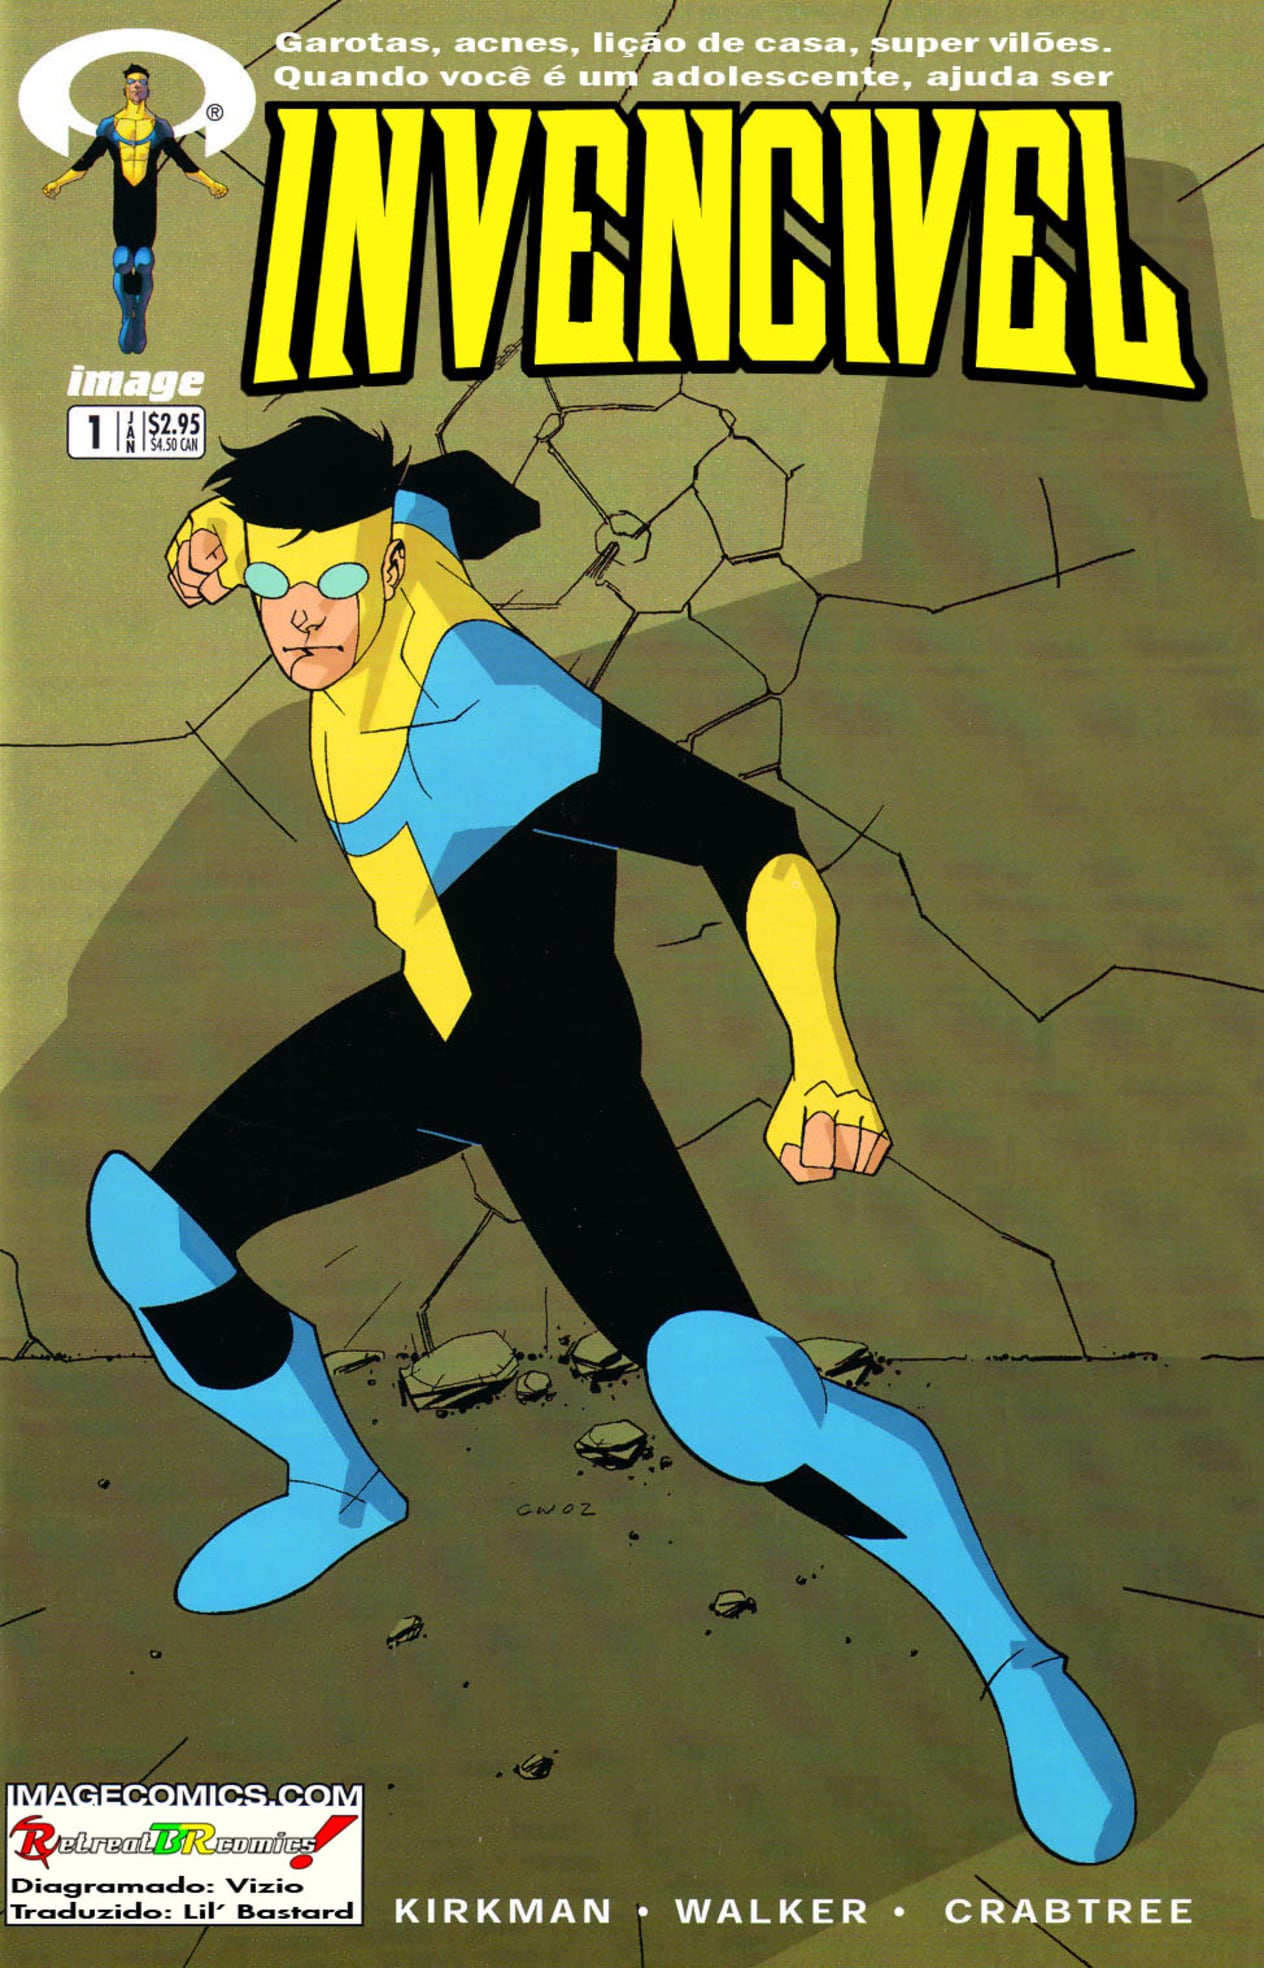 Primeira edição da HQ de Invencível na Image Comics em 2003